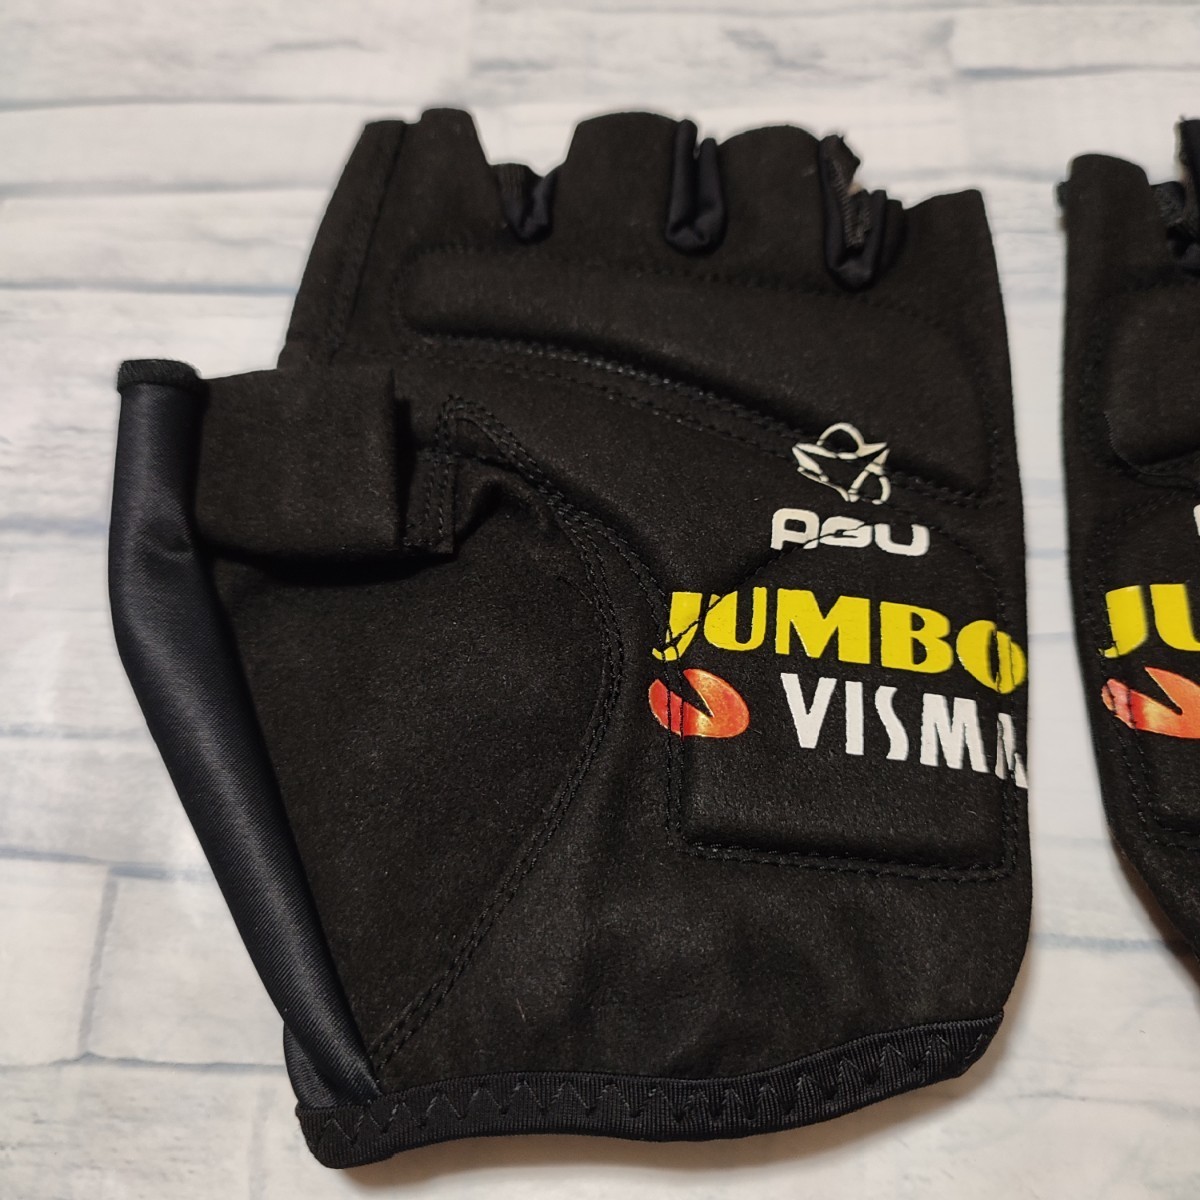 支給品　グローブ　Jumbo visma　手袋　AGU　ユンボヴィスマ　XXL　サイクルジャージ　ロードバイク ロットLottoNL ヴィンゲゴー　ワウト_画像3